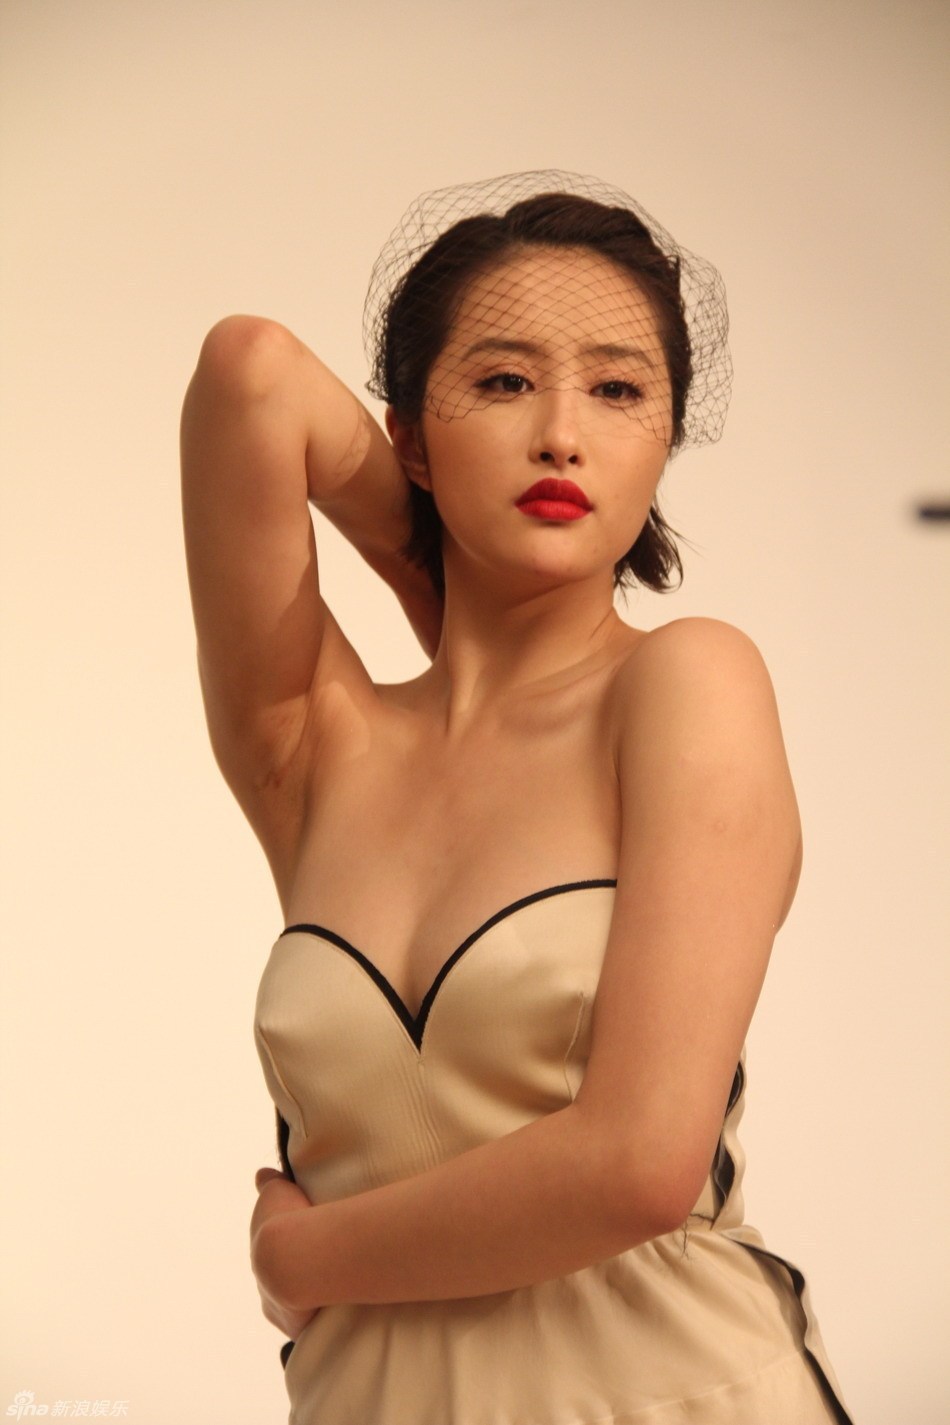 Shera Li Sexy and Hottest Photos , Latest Pics